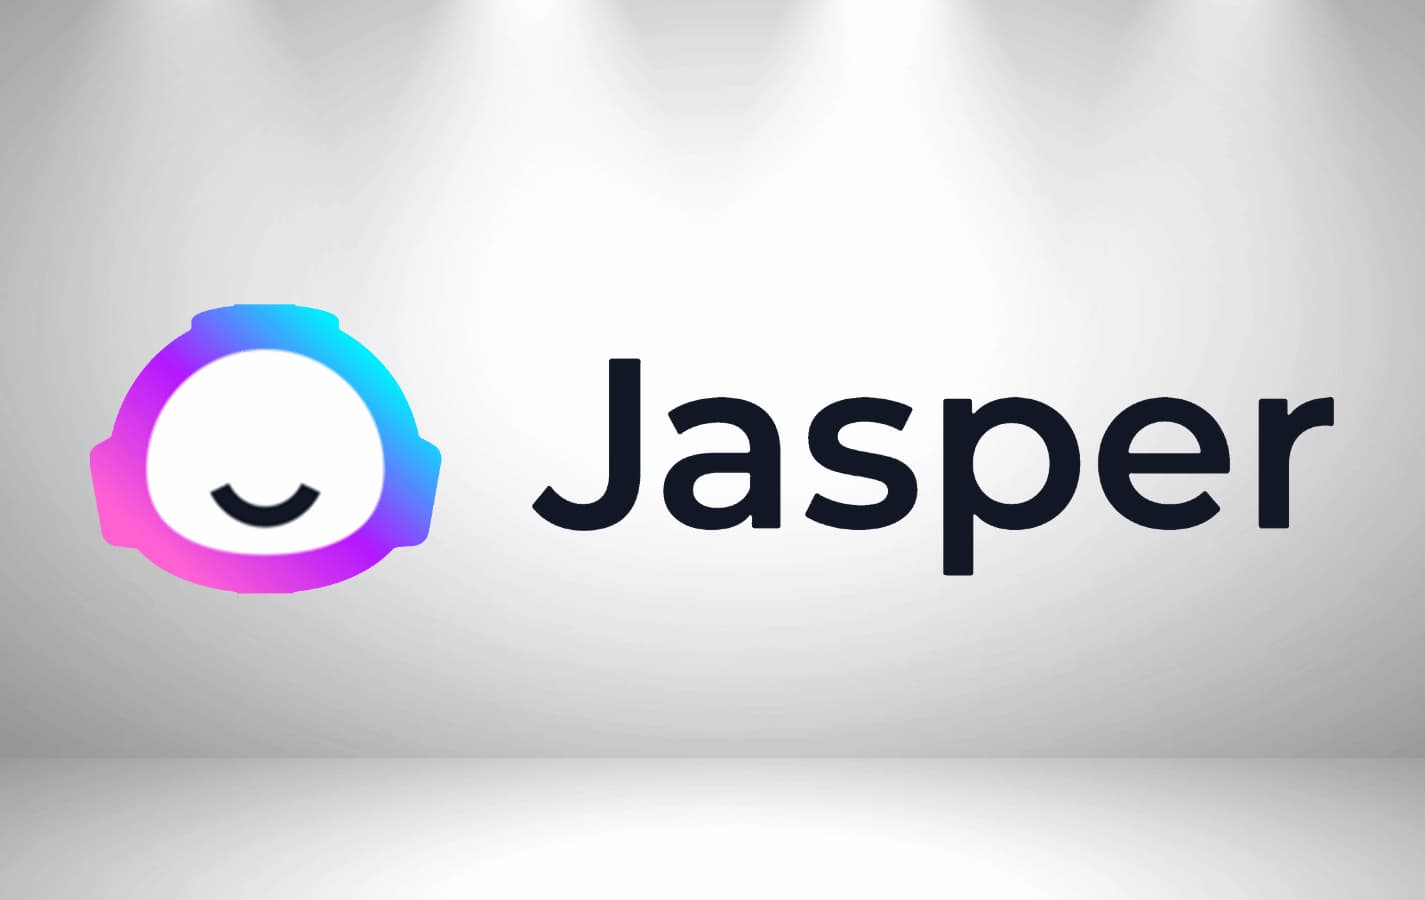 Jasper AI Logo set against a white background